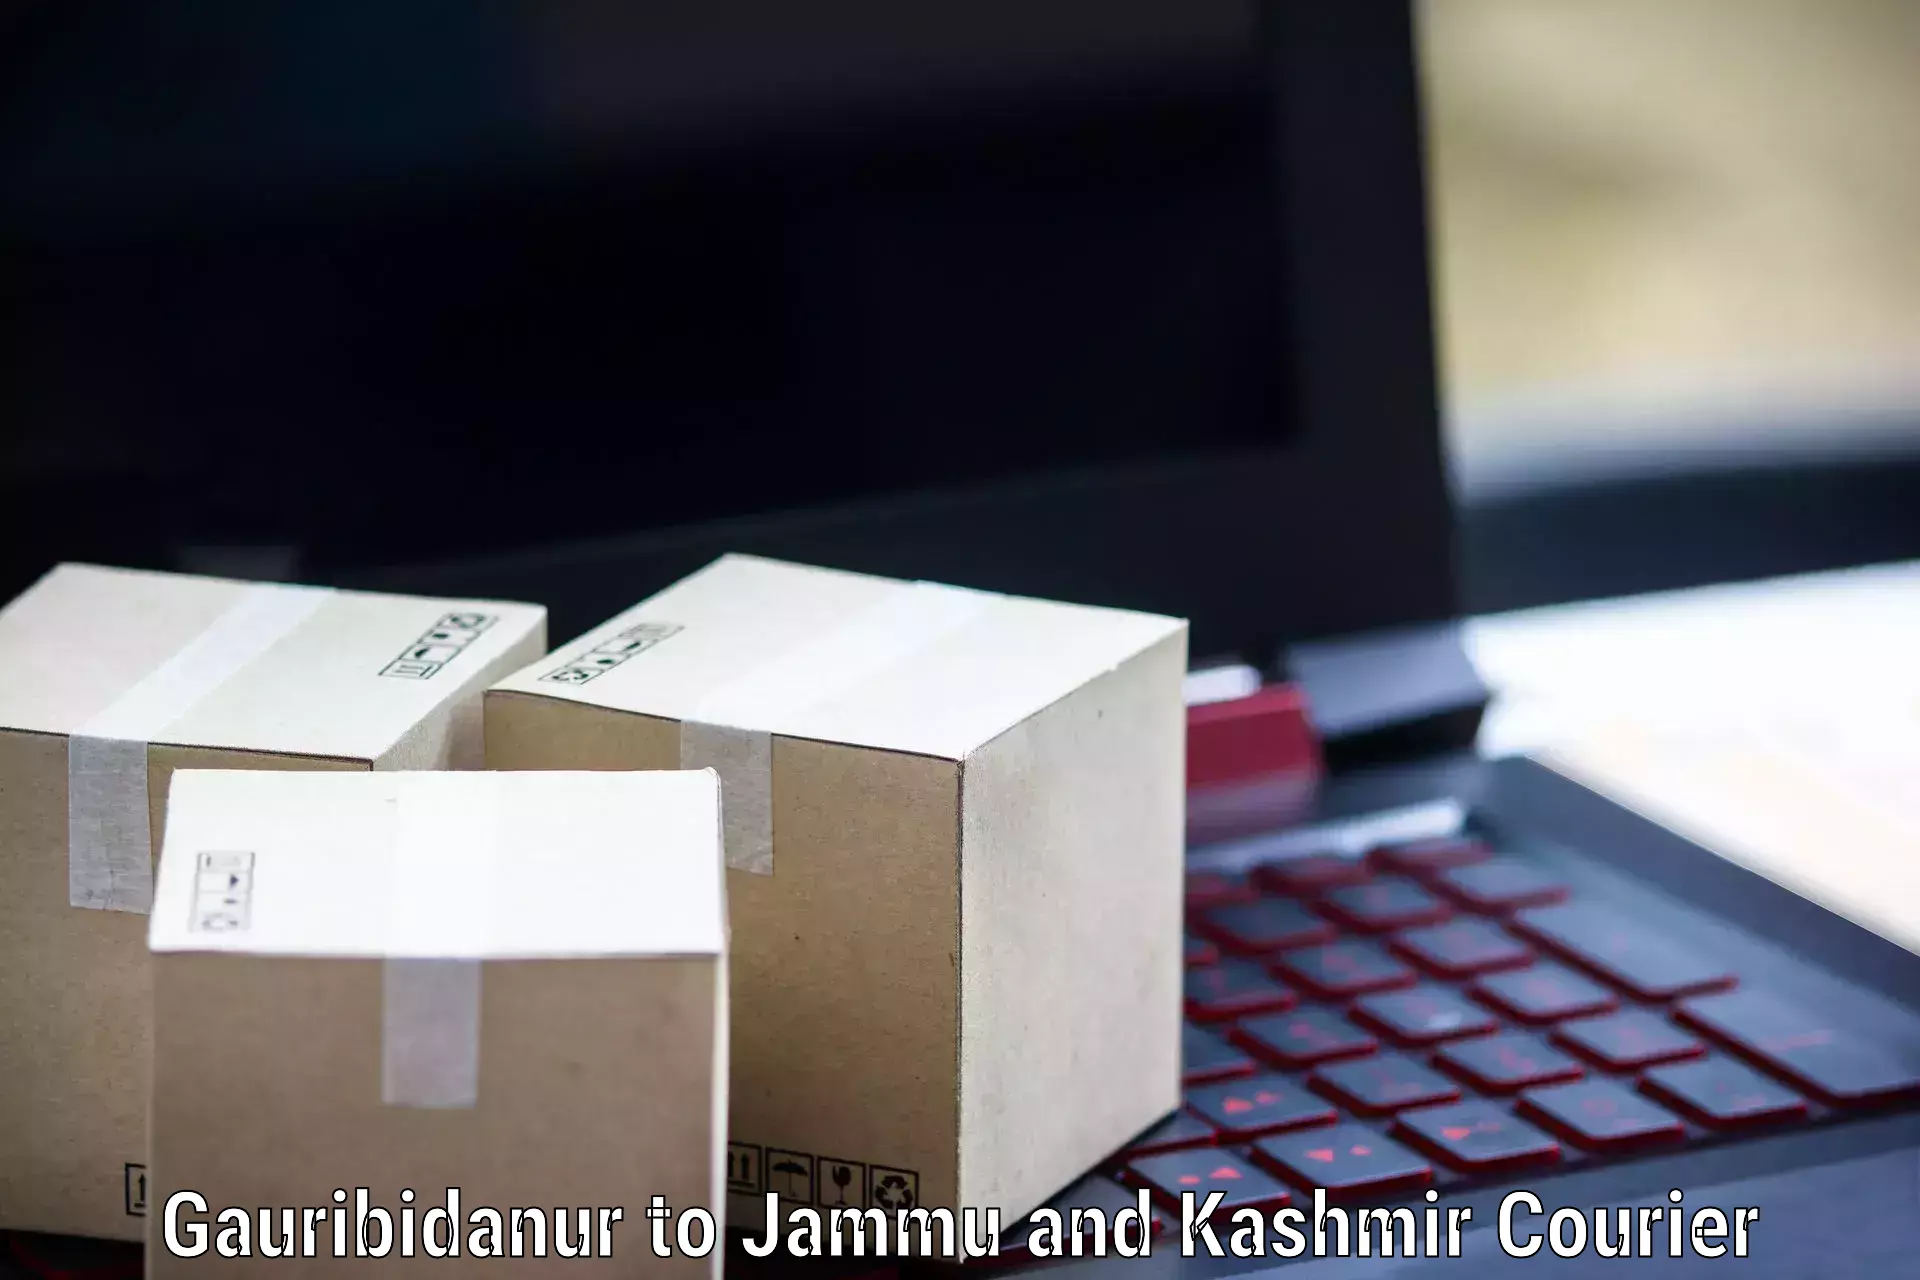 Modern courier technology Gauribidanur to Budgam